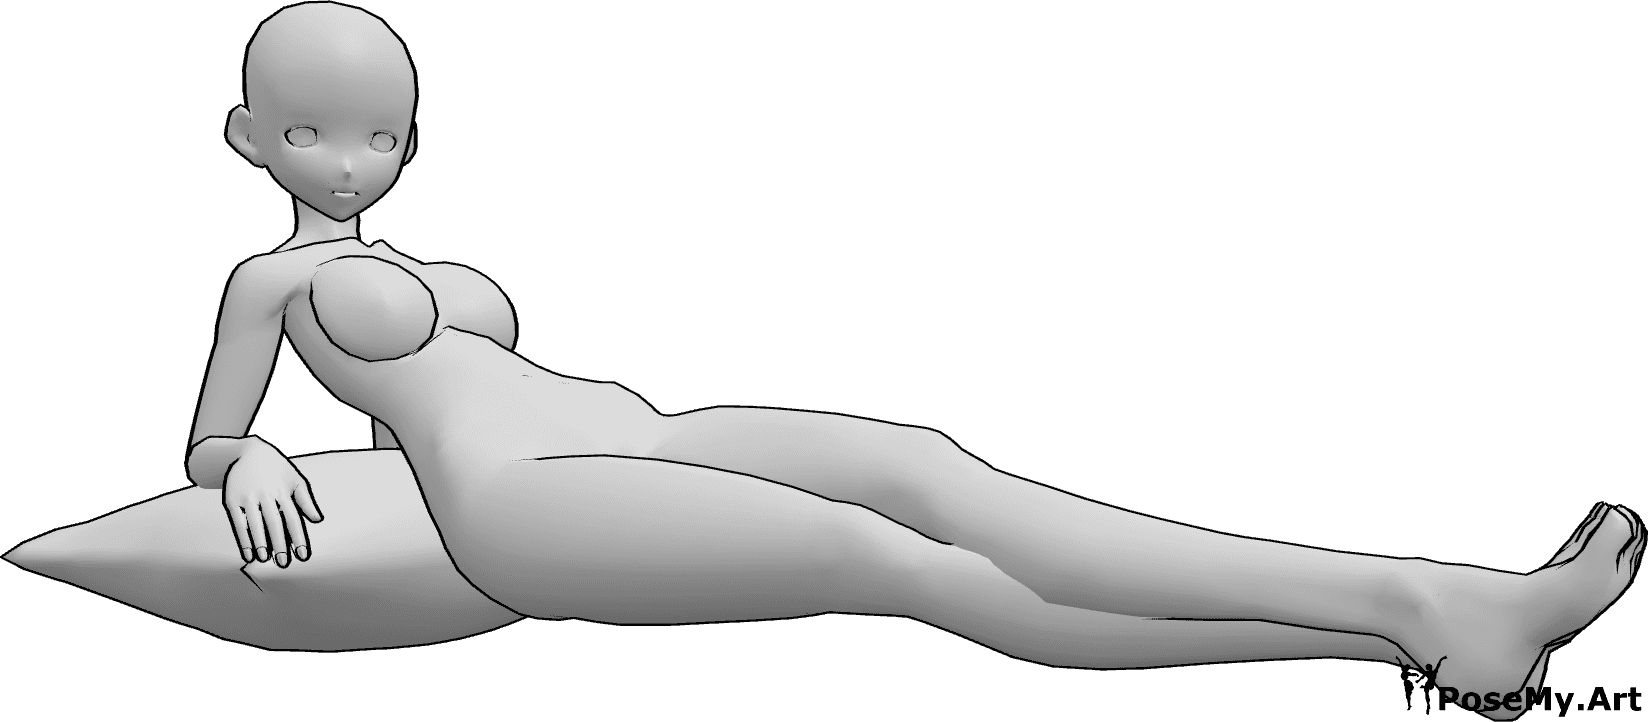 Referencia de poses- Anime femenino tumbado pose - Mujer anime está tumbada y mirando a la derecha, apoyada en una almohada